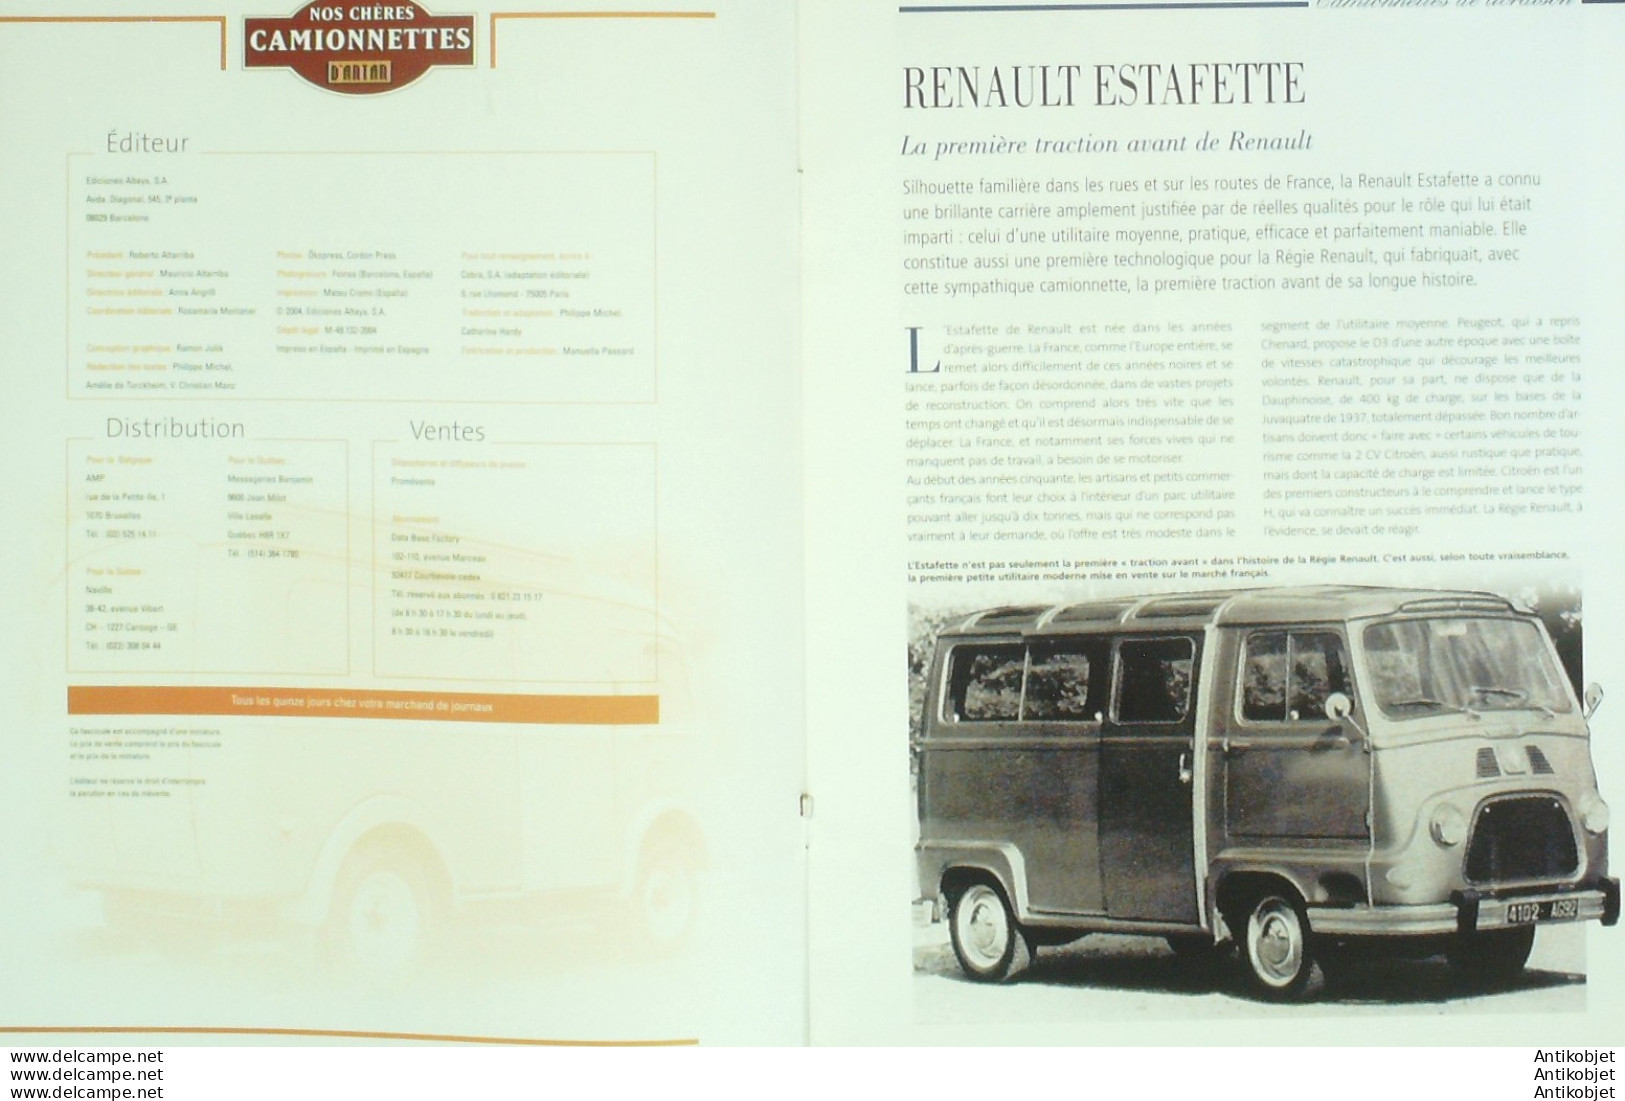 Renault Estafette Banania Camionnette D'antan édition Hachette - History